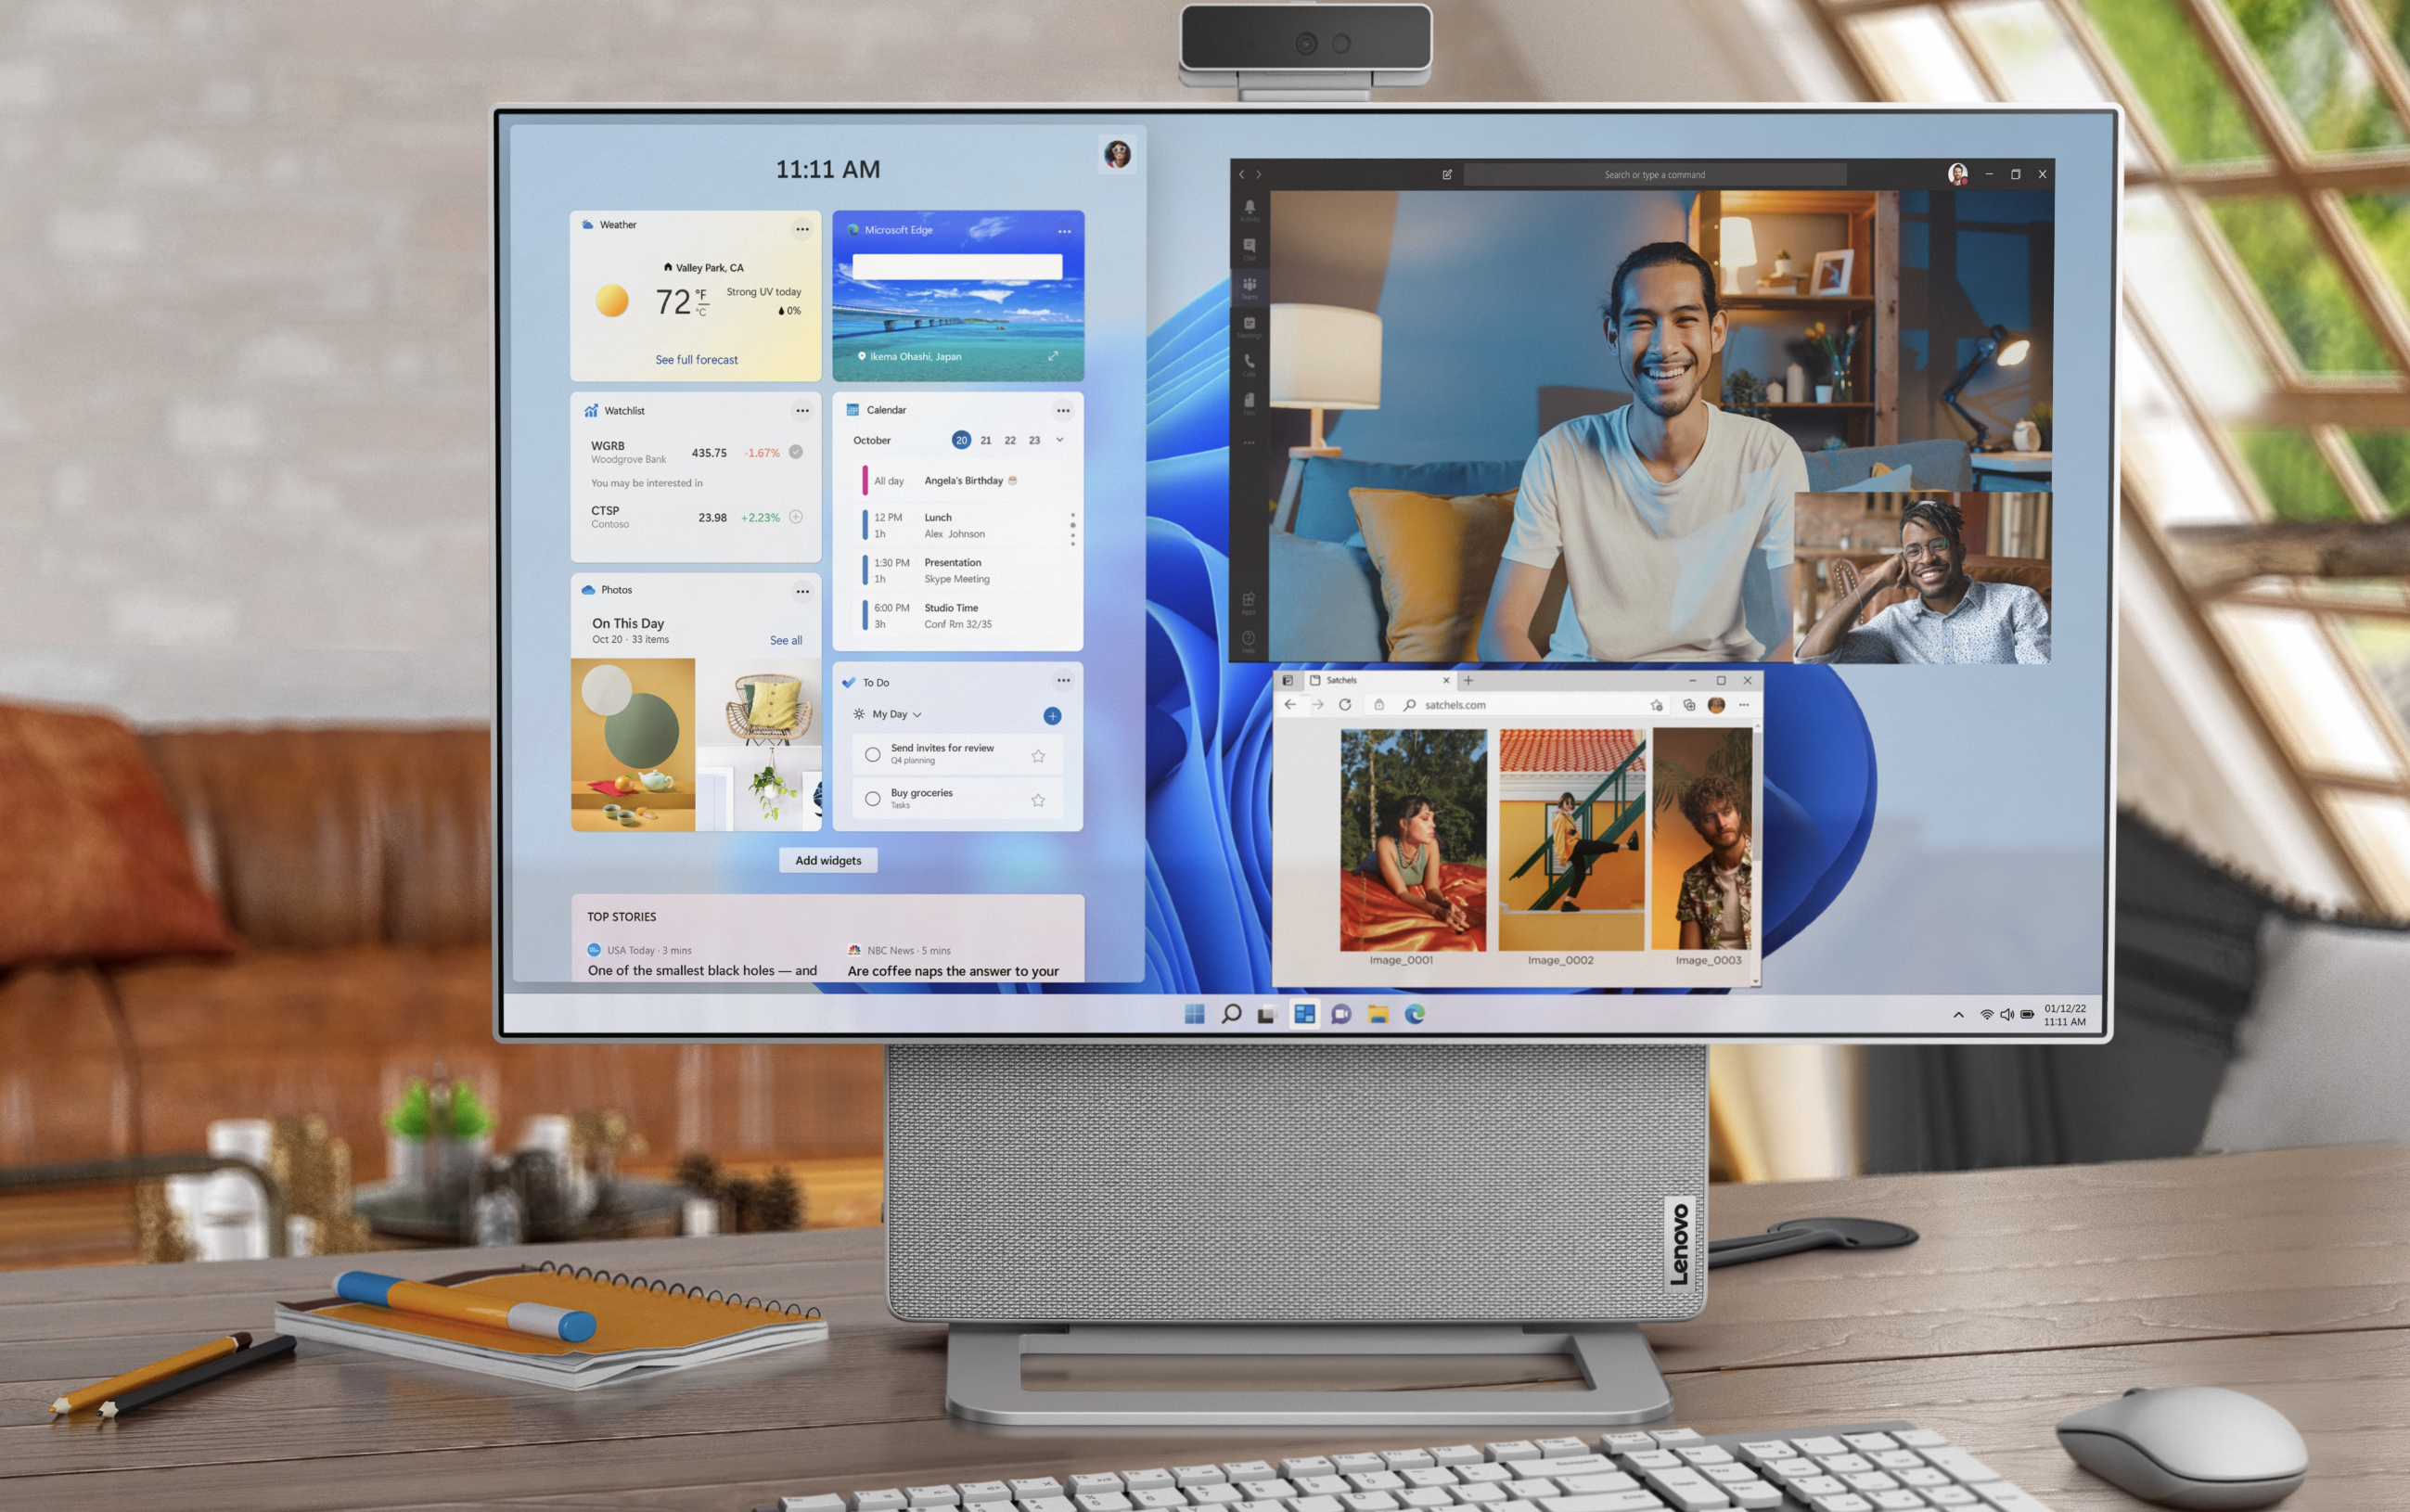 Oferta de PC todo en uno: $ 650 de descuento en la respuesta de Lenovo a iMac |  Tendencias digitales